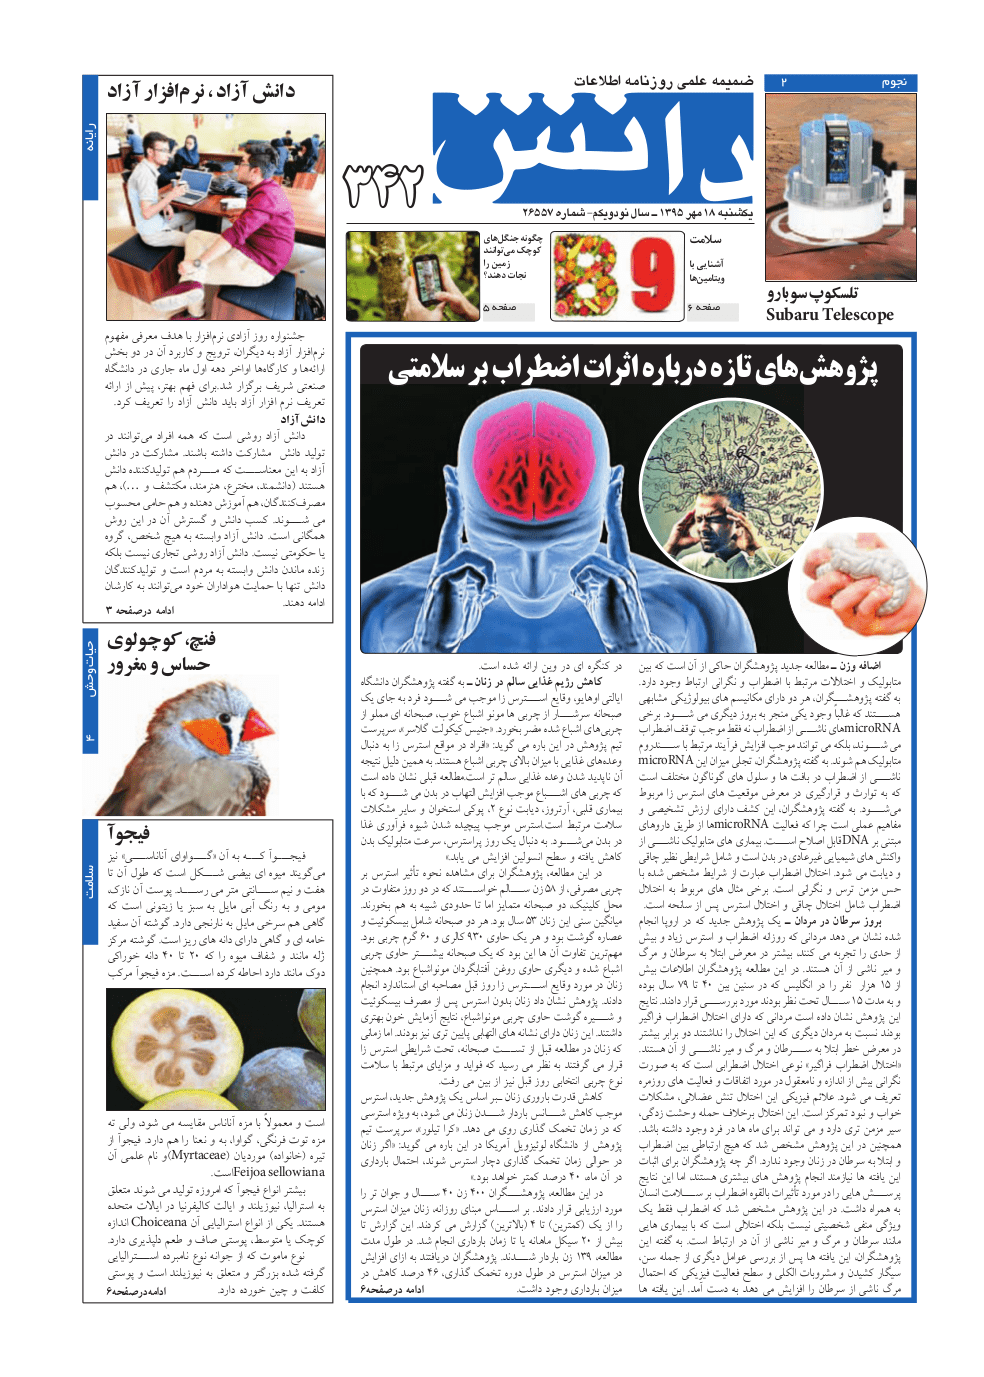 صفحهٔ اول گزارش جشنواره در ضمیمه دانش امروز روزنامهٔ اطلاعات